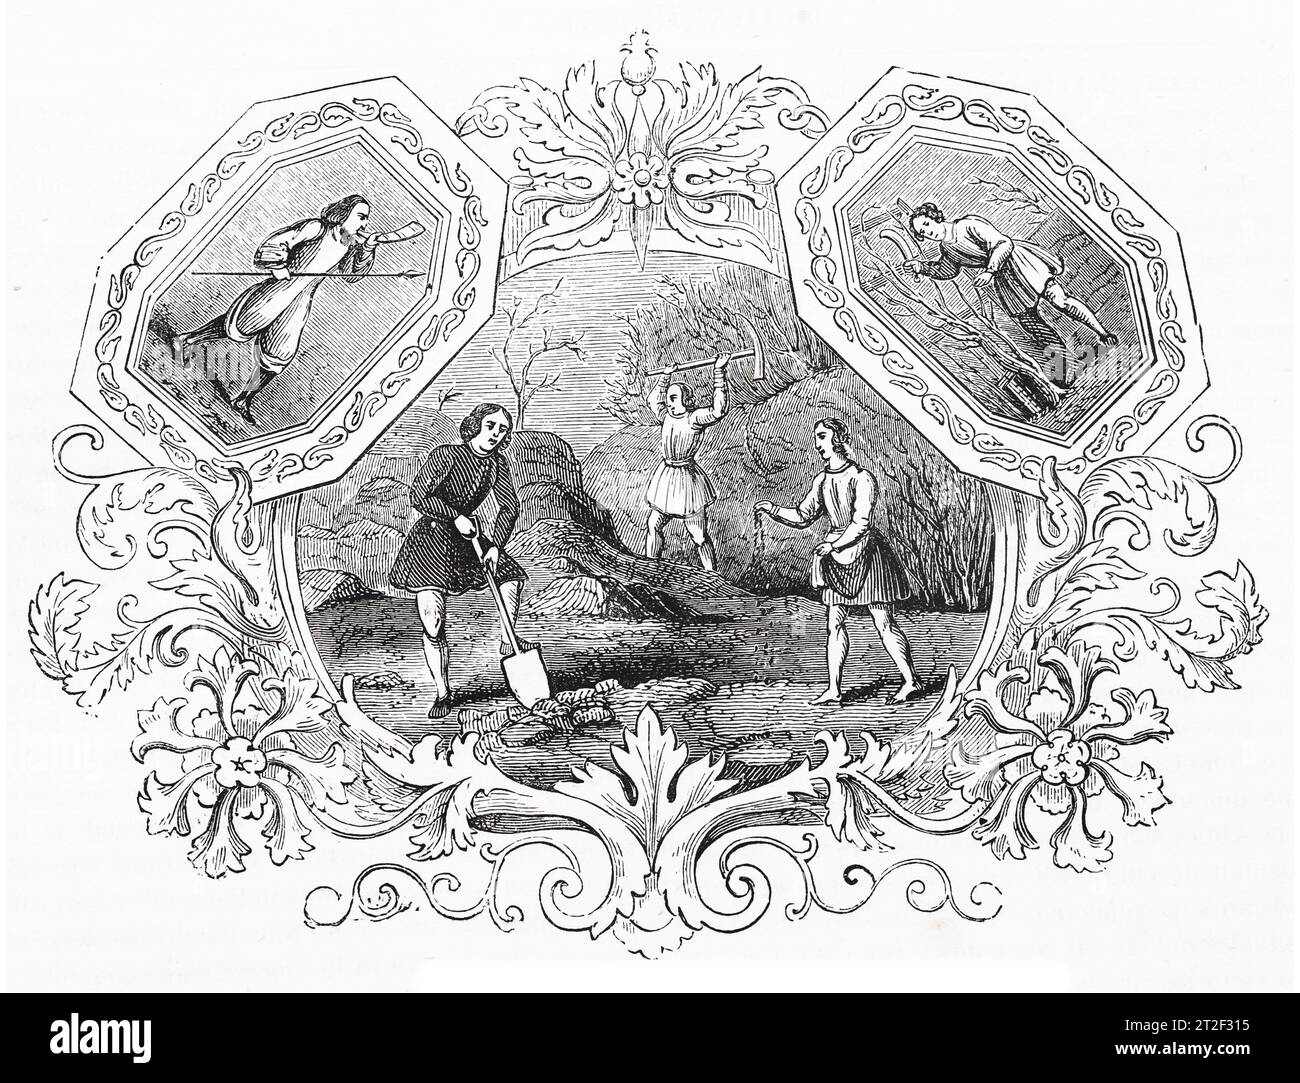 Emblemas sajones del mes de marzo. Ilustración en blanco y negro de la 'Vieja Inglaterra' publicada por James Sangster en 1860. Foto de stock